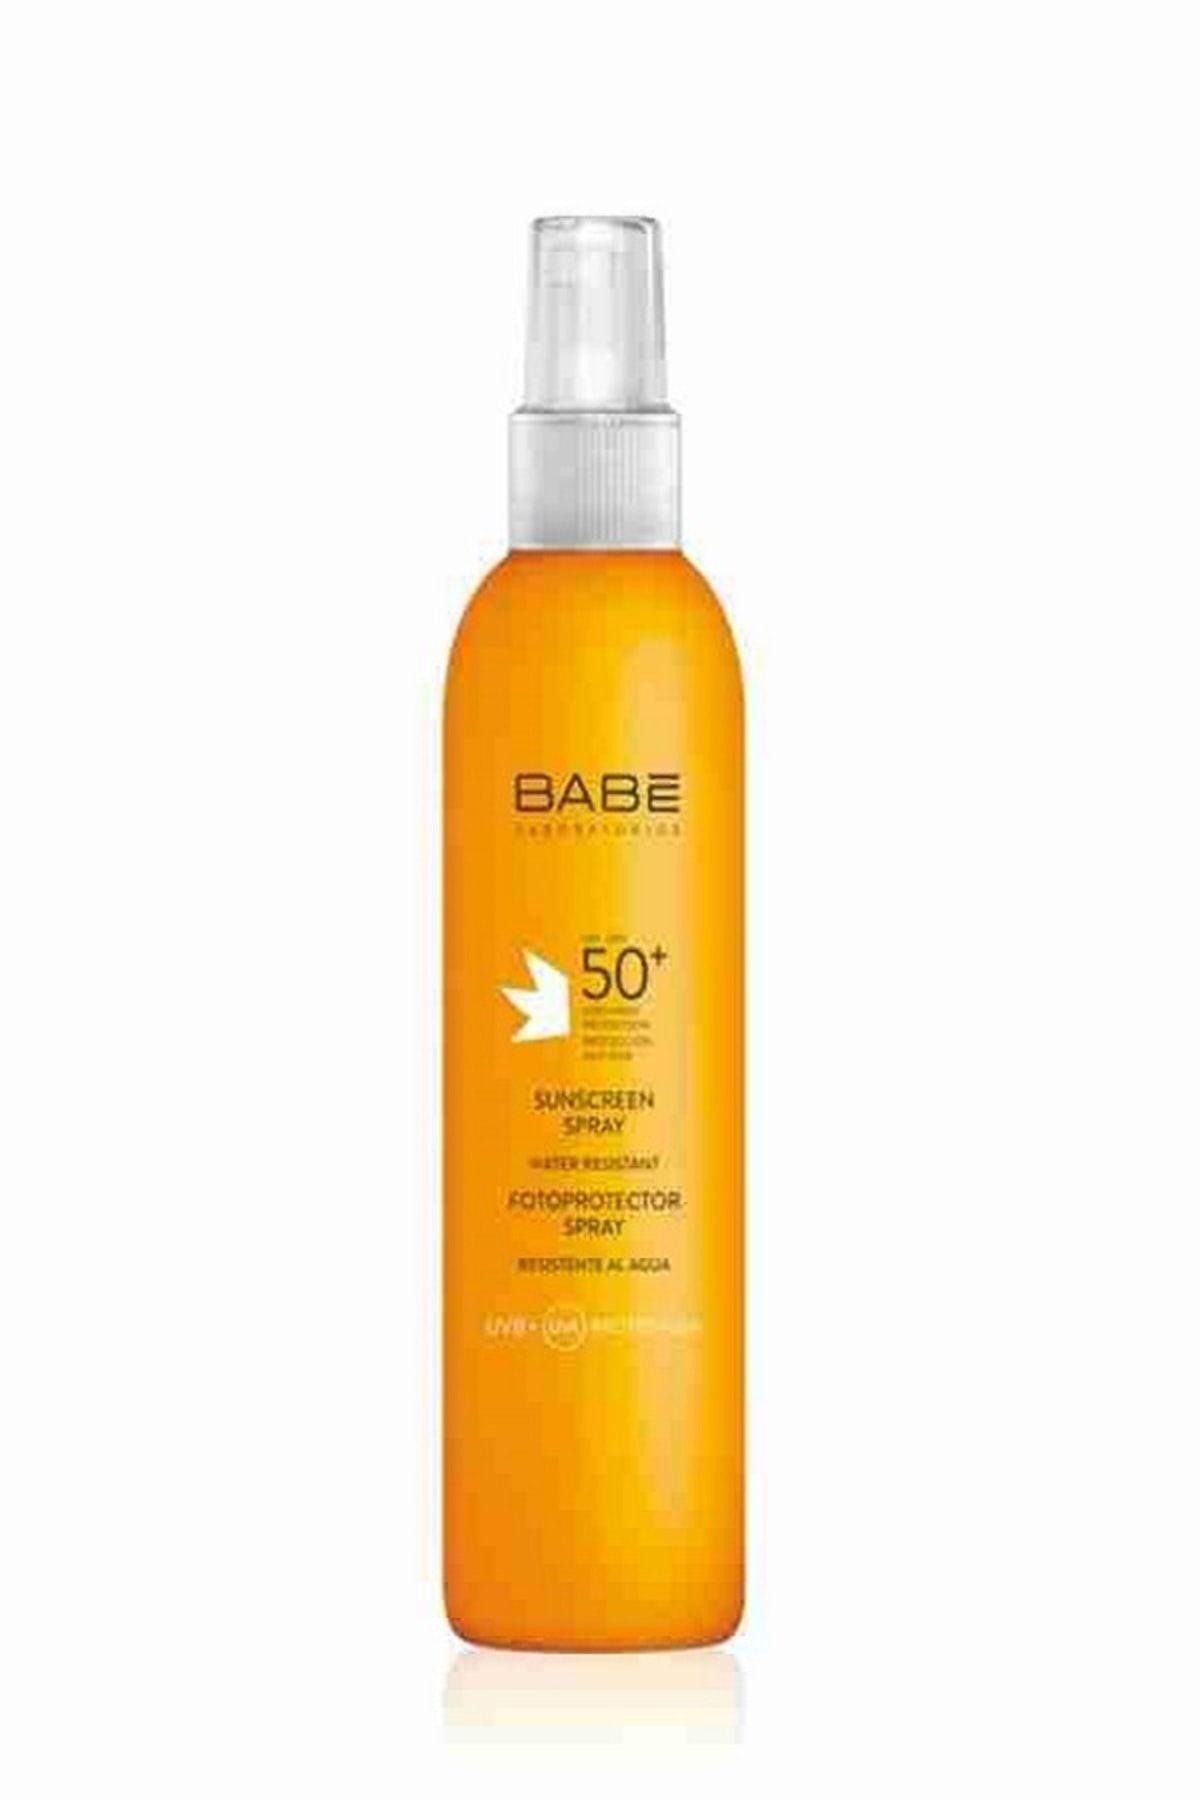 Babe Laboratorios Sunscreen Spray SPF 50+ - Vücut için Güneş Spreyi 200 ml